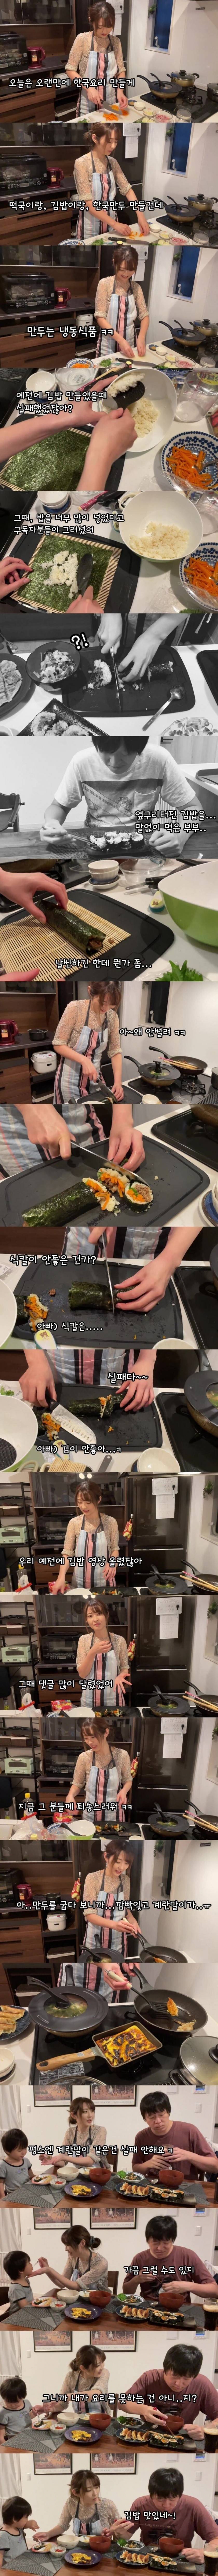 일본인 아내의 한국김밥 도전.jpg